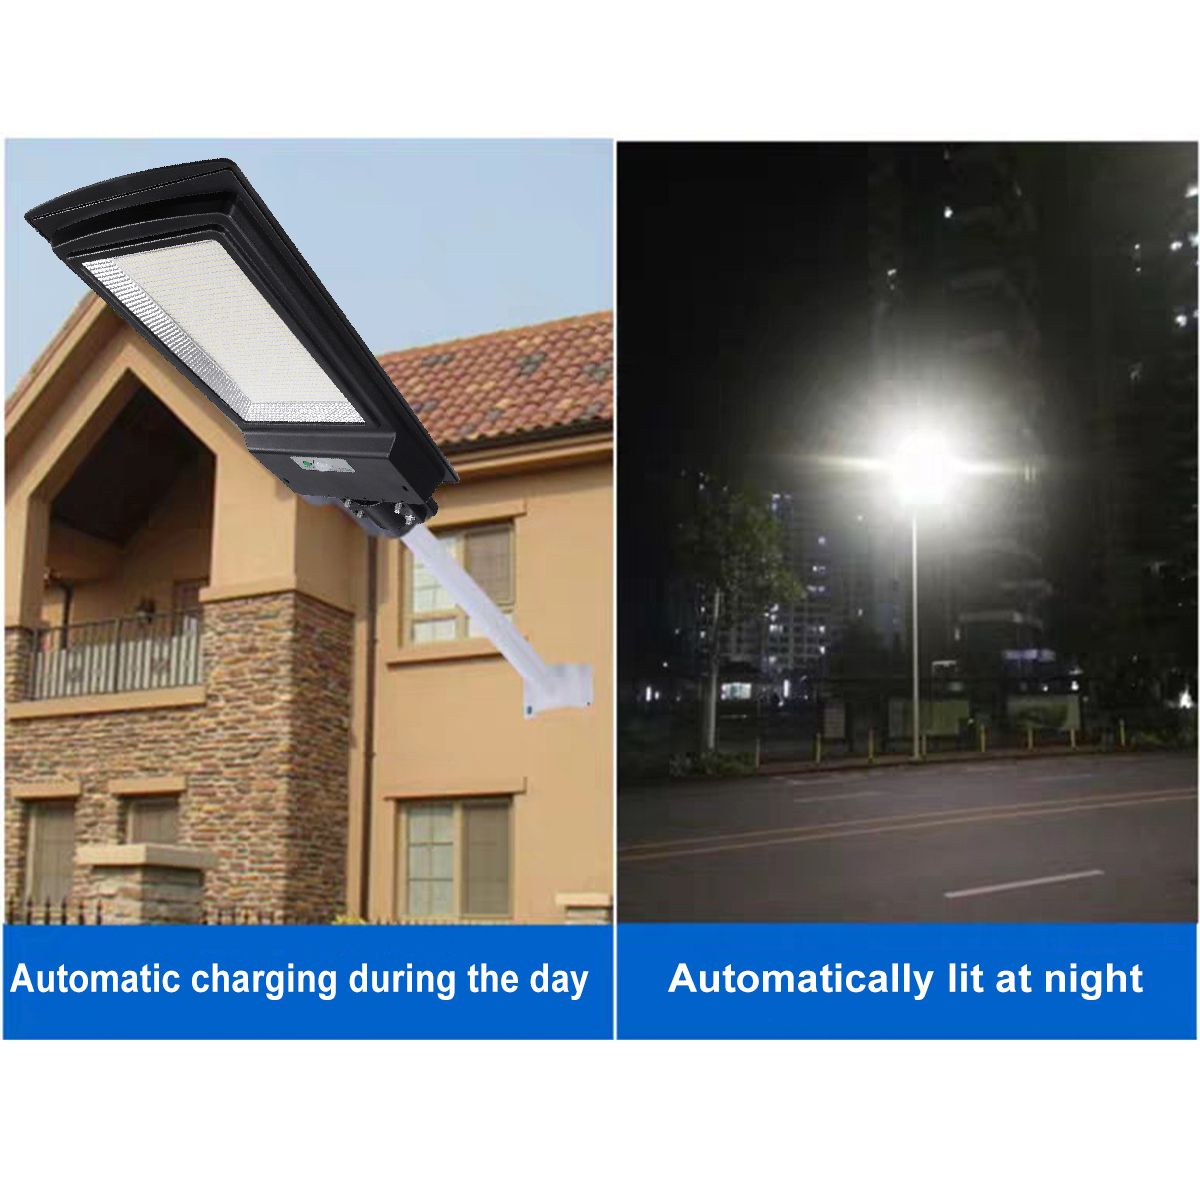 936-LED-Solar-Street-Light-PIR-Motion-Sensor-Lamp-Wall-Garden-1618944